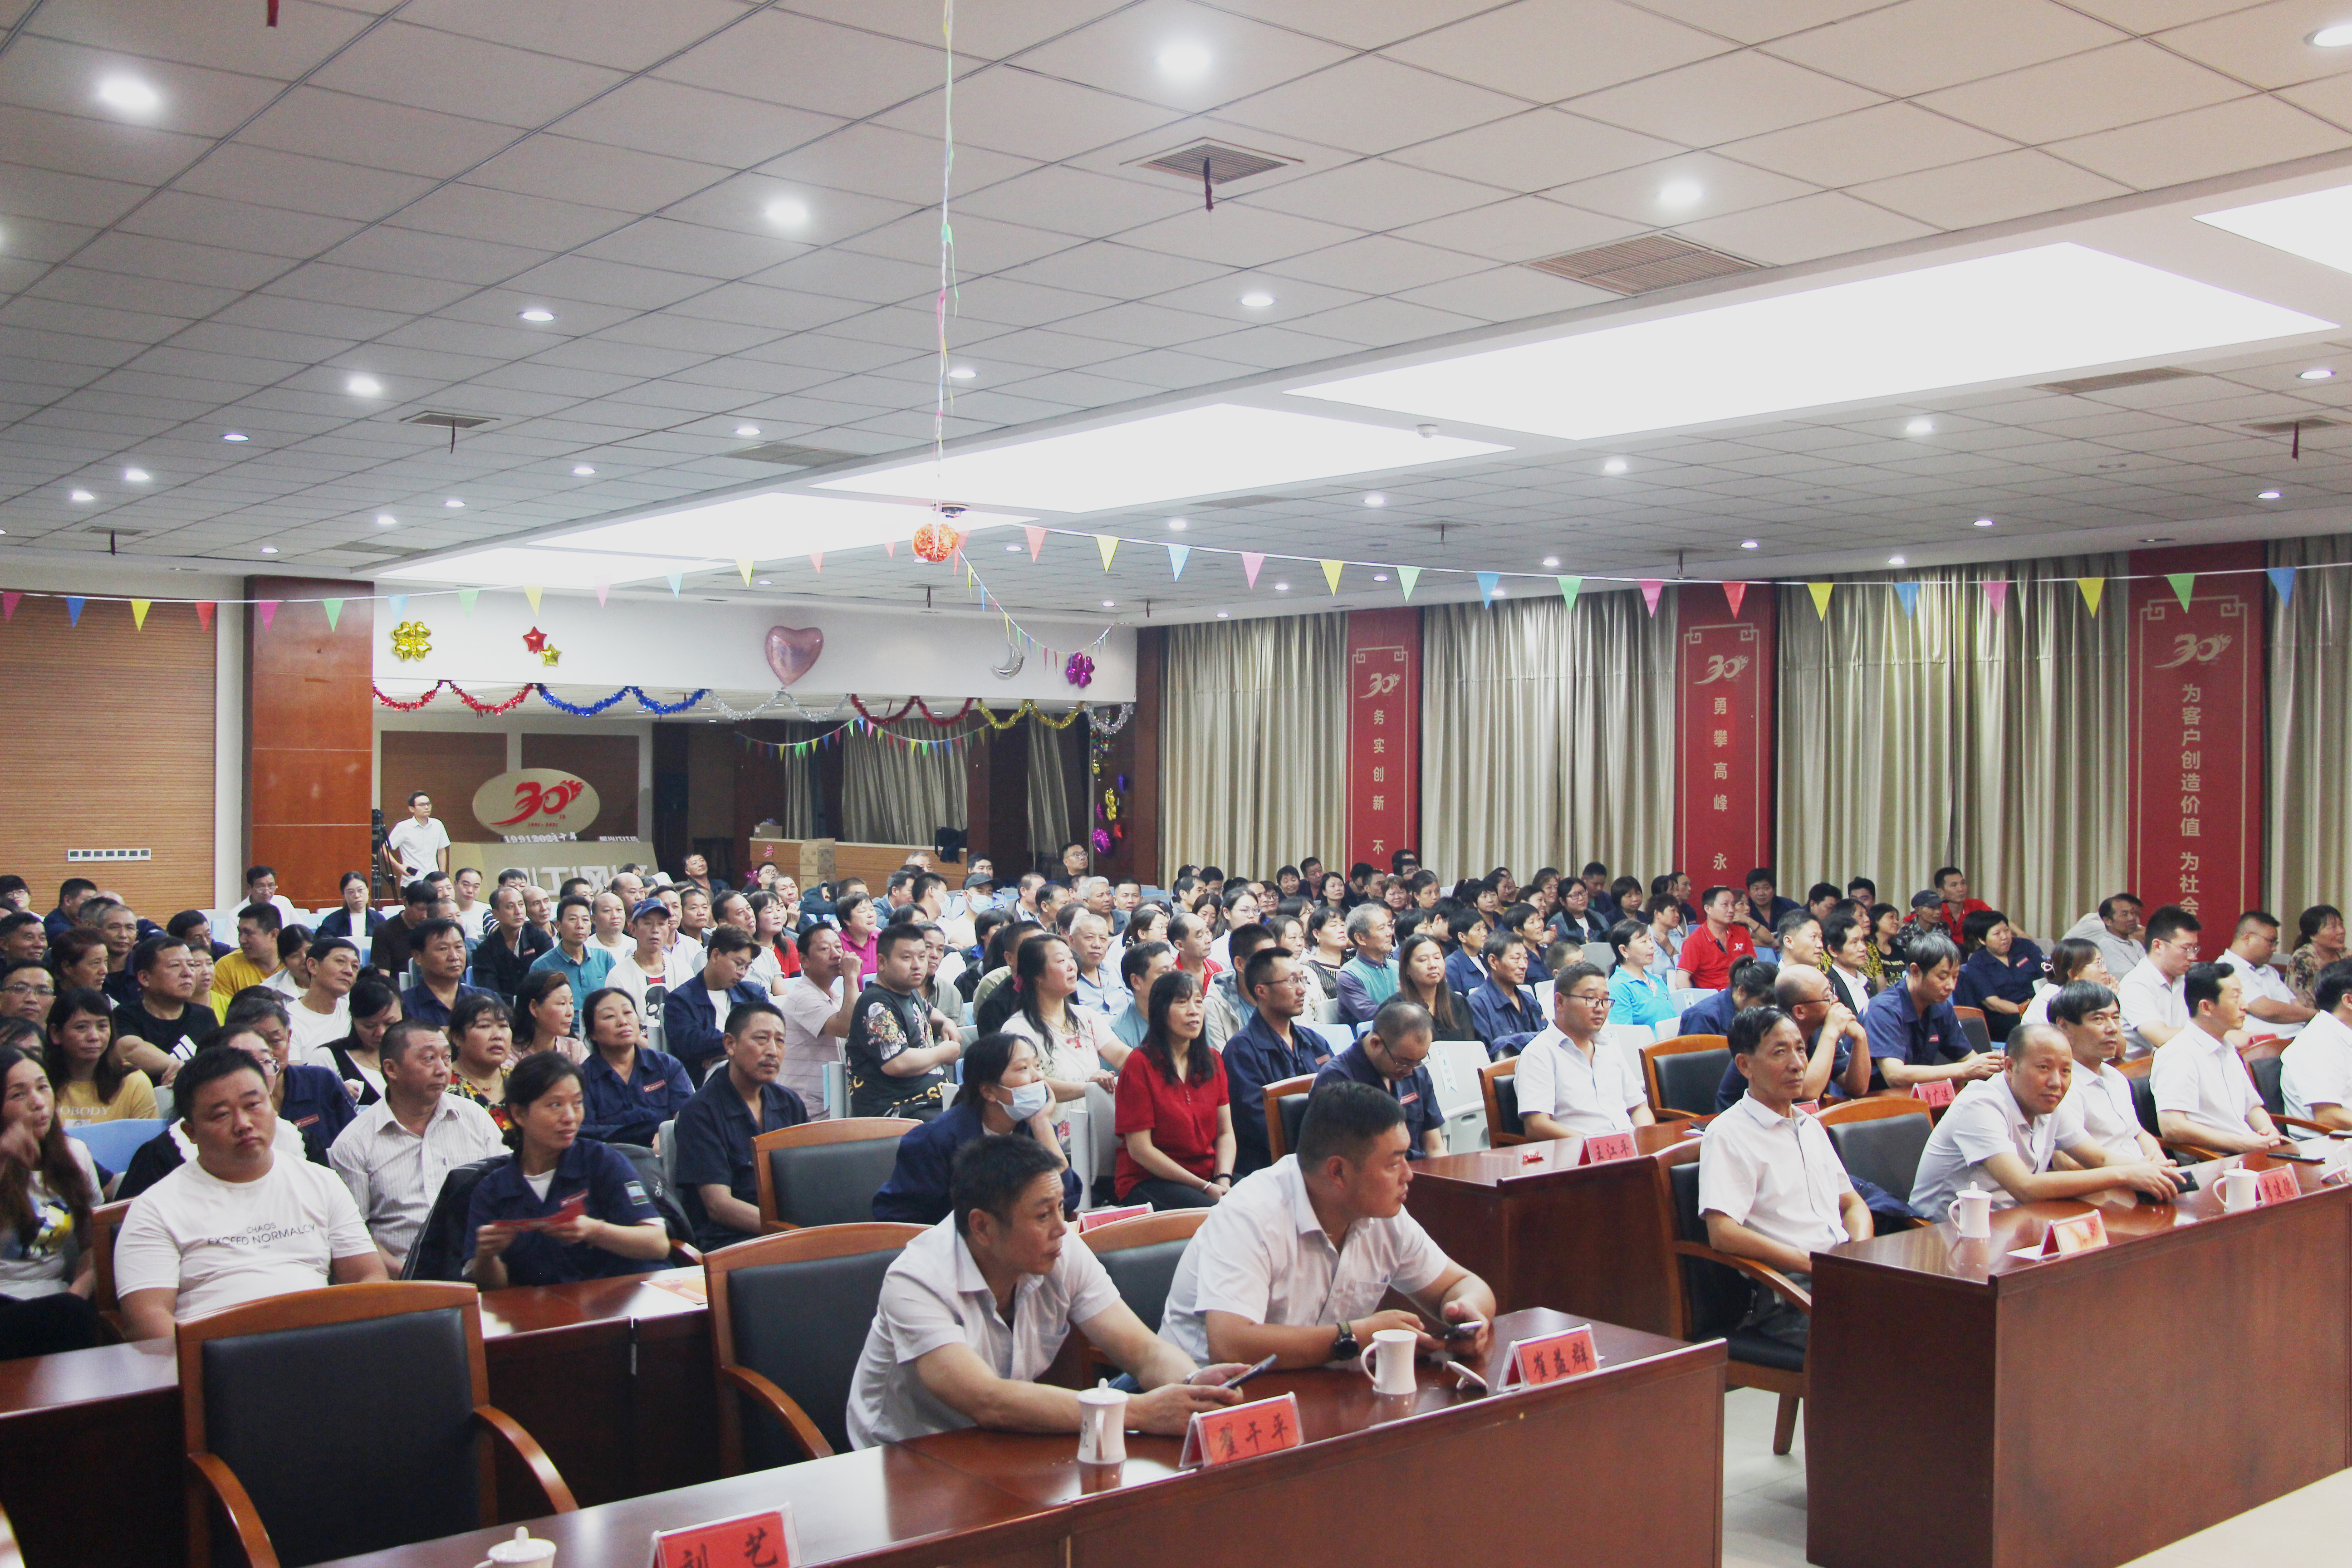 江苏星火特钢集团有限公司举办第45期快乐会议